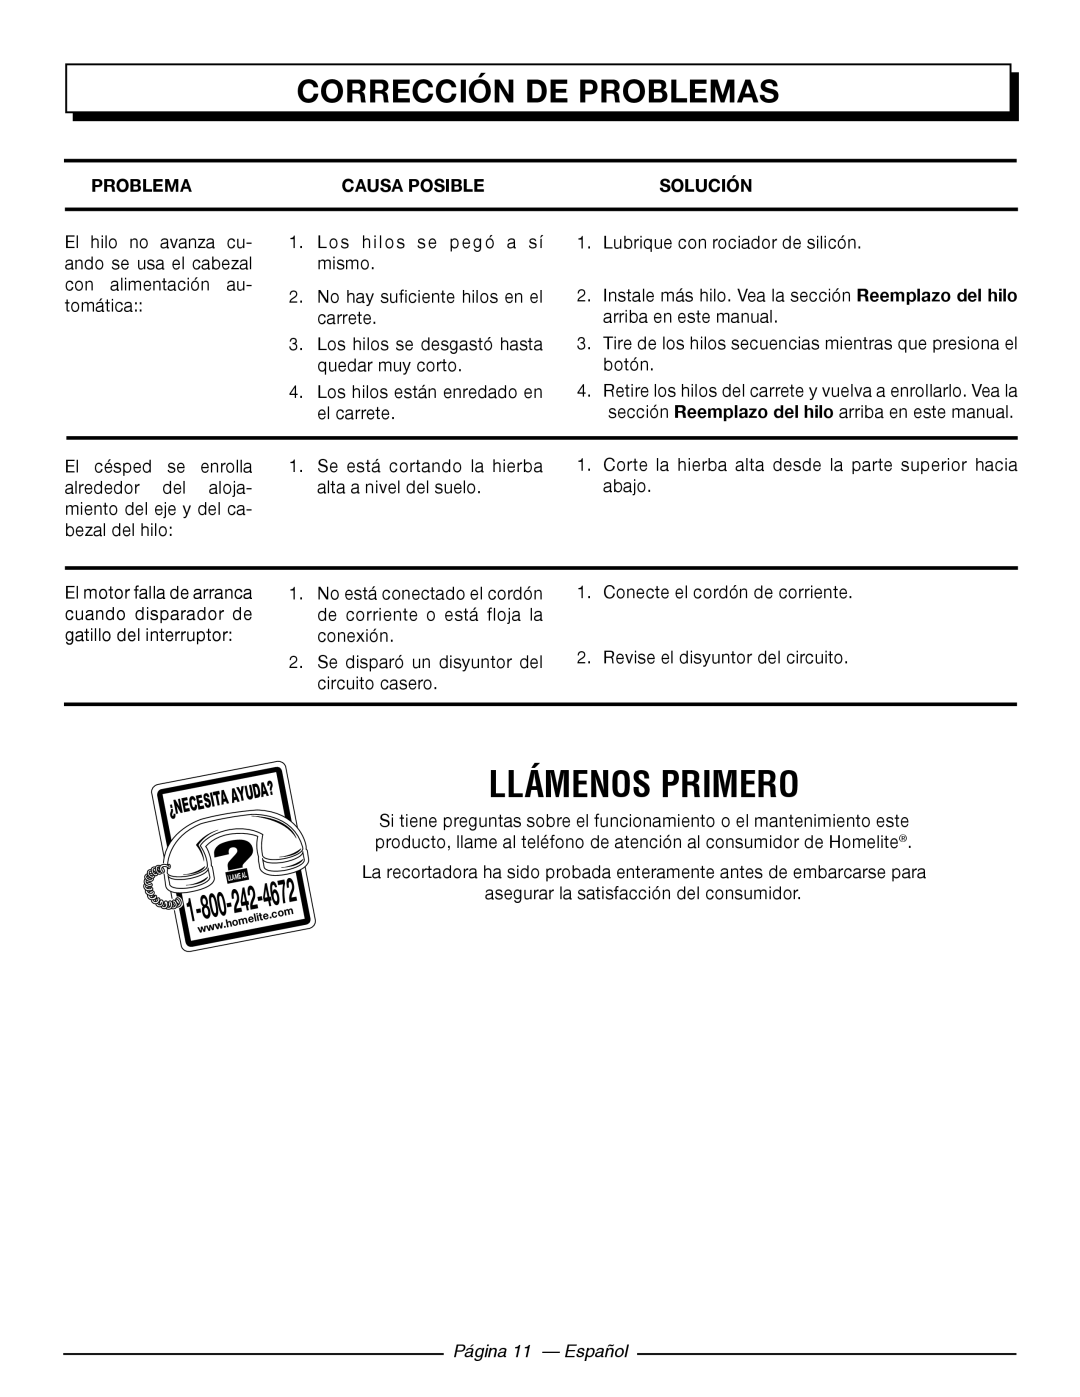 Homelite UT41121 Llámenos Primero, Corrección De Problemas, Causa Posible, Solución, 4672, Página 11 - Español 